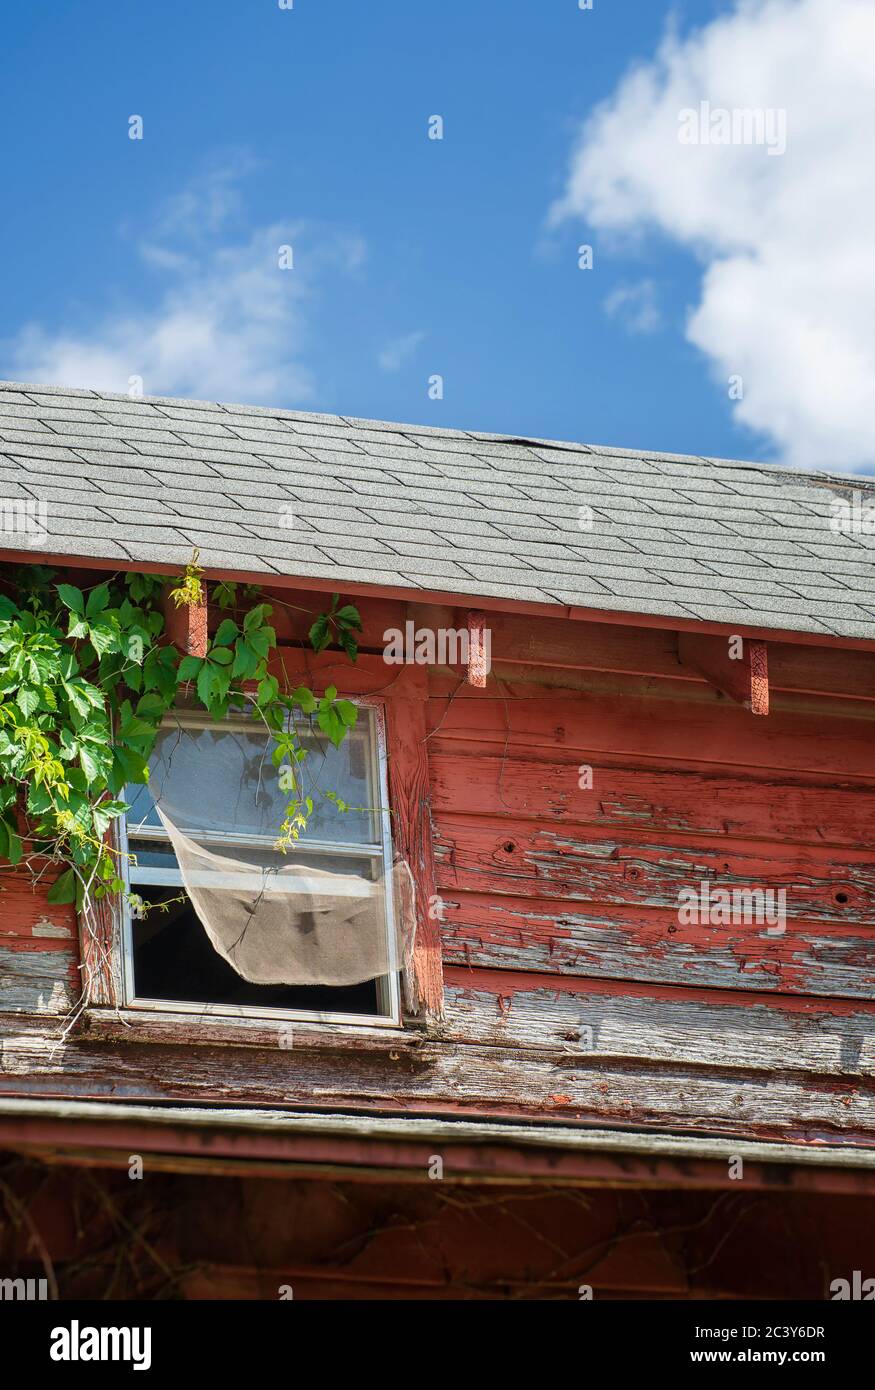 Fenster einer alten verlassenen und verwitterten roten Scheune. Weinrebe wächst an der Wand und Fenster Netz weht in den Wind. Stockfoto